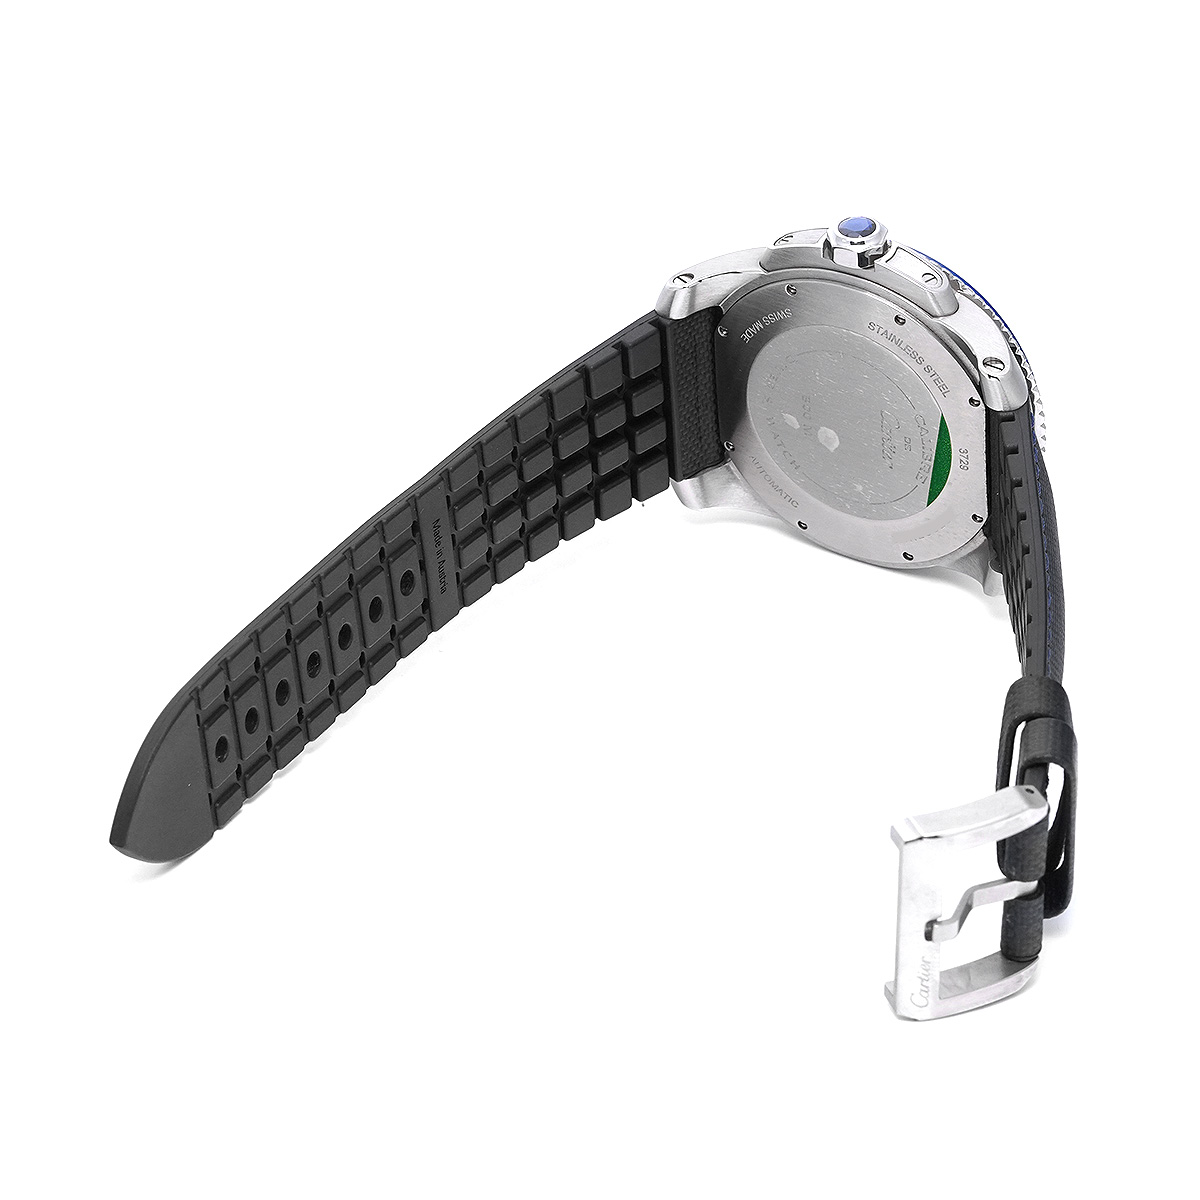 カルティエ カリブル ドゥ カルティエ ダイバー WSCA0010 ブルー メンズ 時計 【中古】【wristwatch】